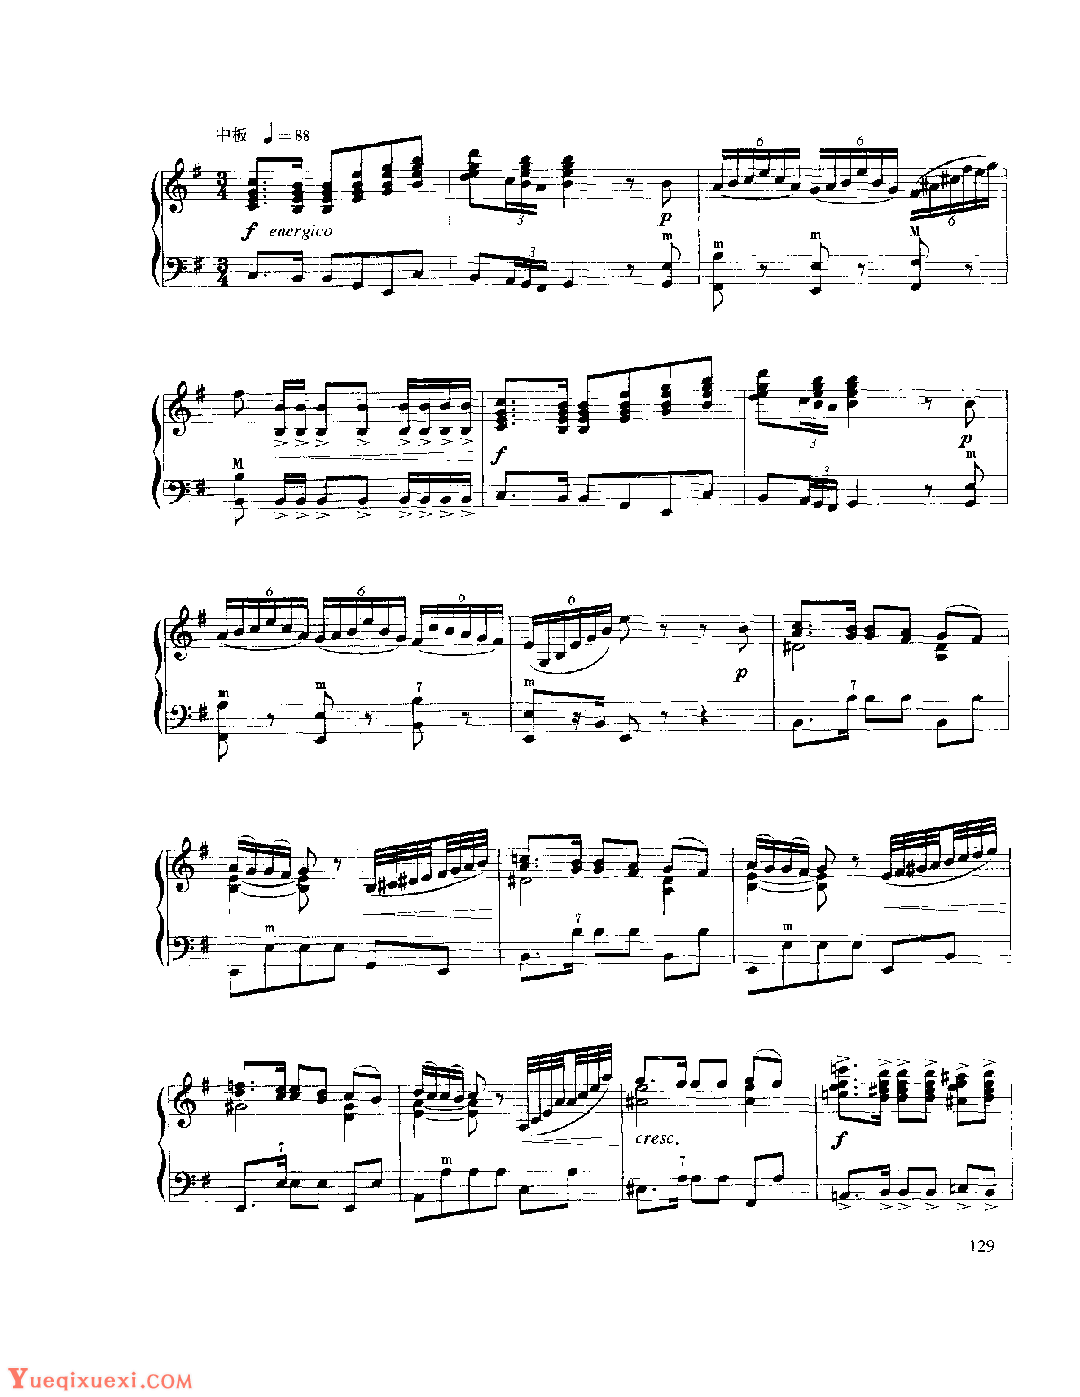 现代手风琴流行乐曲《幻想曲》[法]A.阿斯蒂尔曲